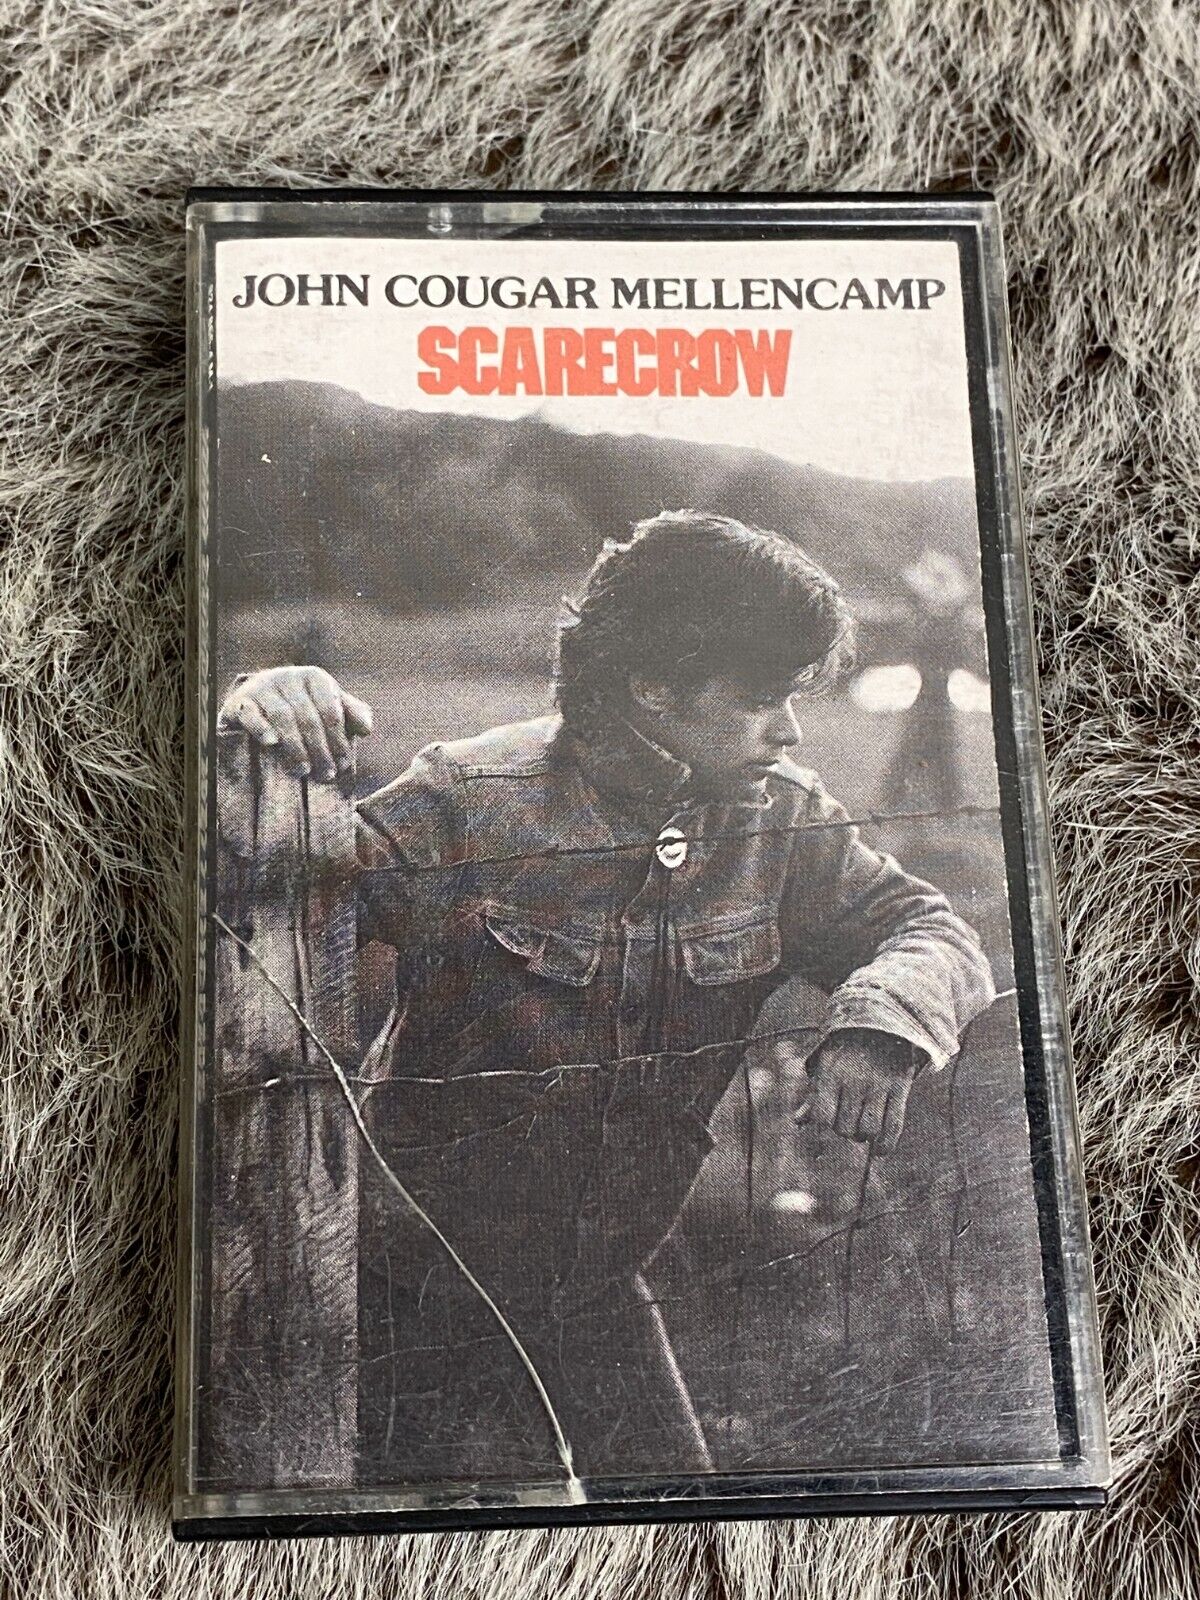 Vintage John Cougar Mellencamp Scarecrow Cassette 1985